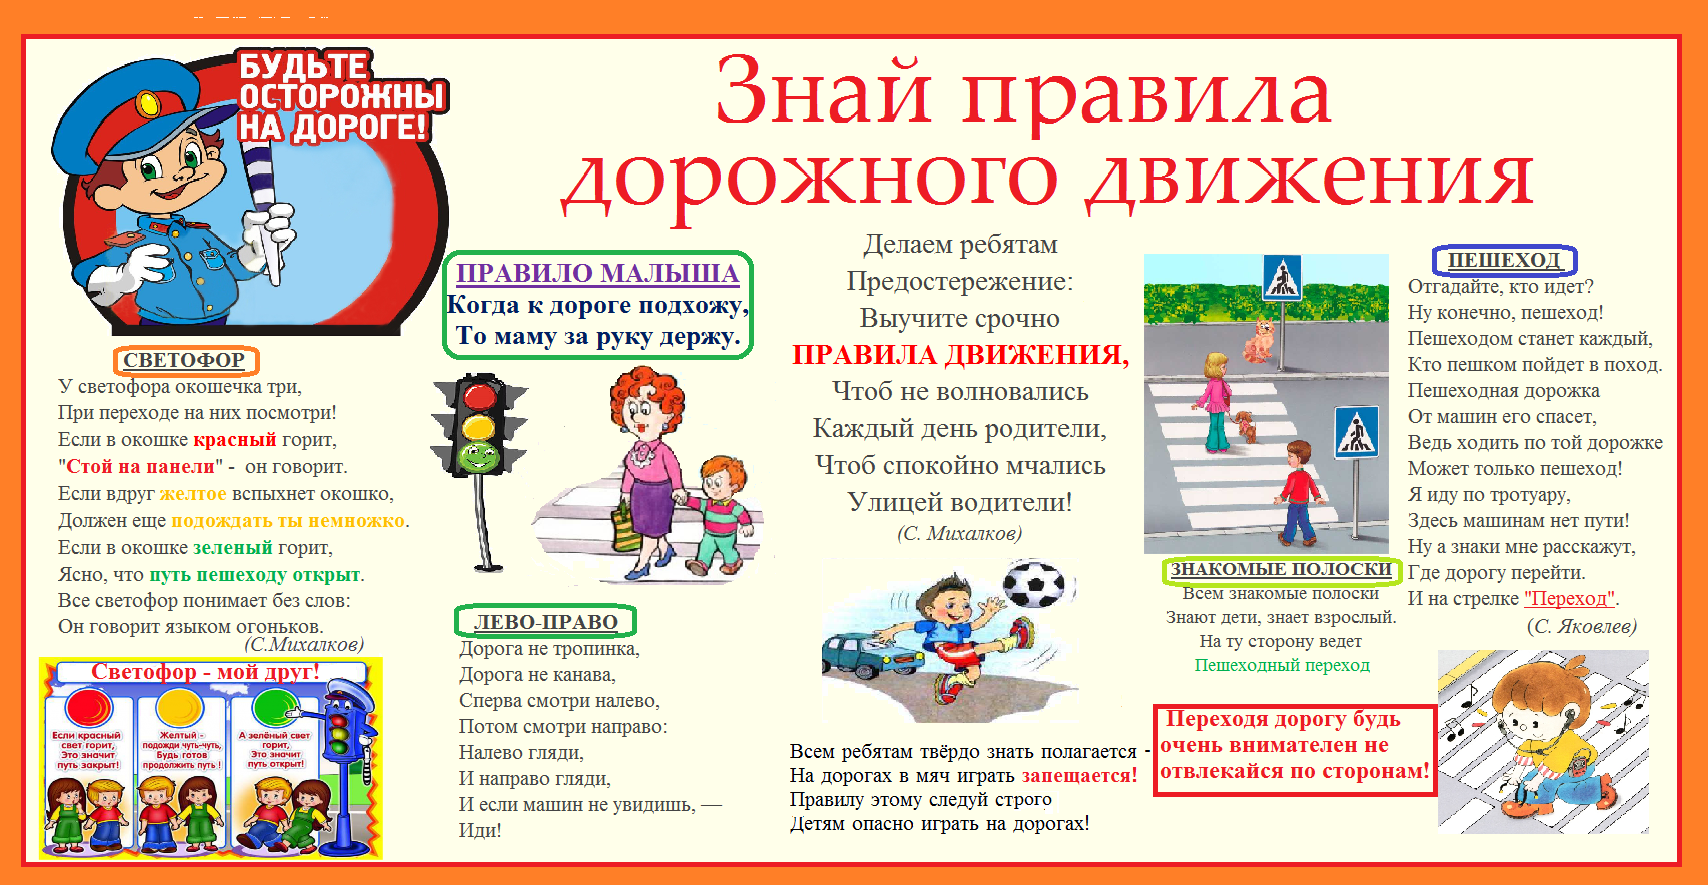 Обеспечивает безопасность на дороге. Правила дорожного движения для детей. Плакат по правилам дорожного движения для школьников. Плакат по правилам дорожного движения для детей. ПДД правила дорожного движения.